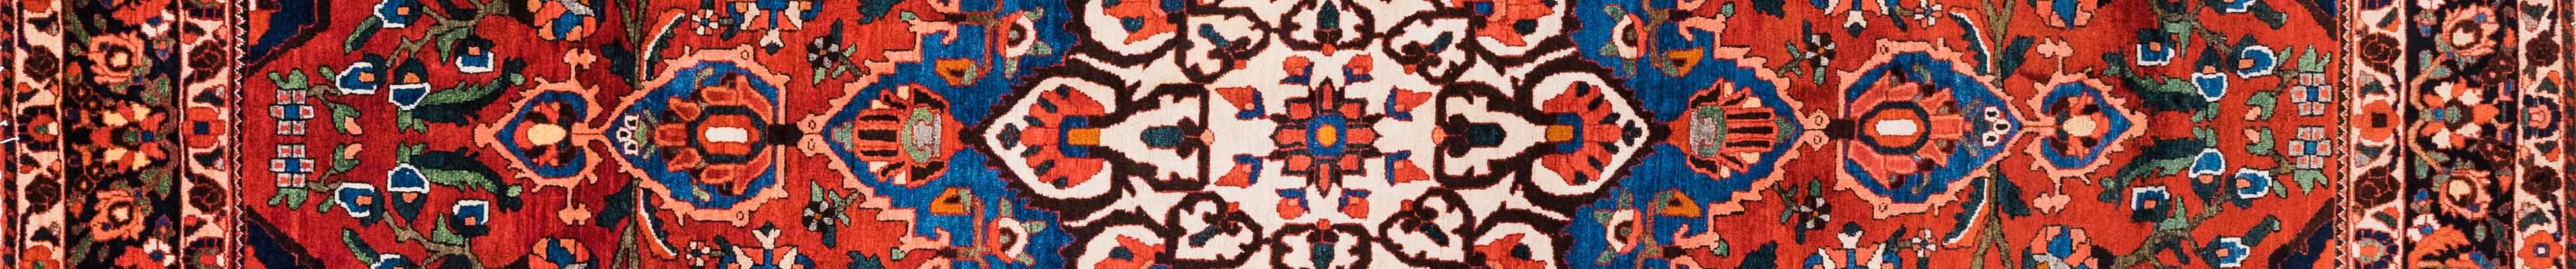 Bakhtiar Persian Carpet Rug N1Carpet Canada Montreal Tapis Persan 1850